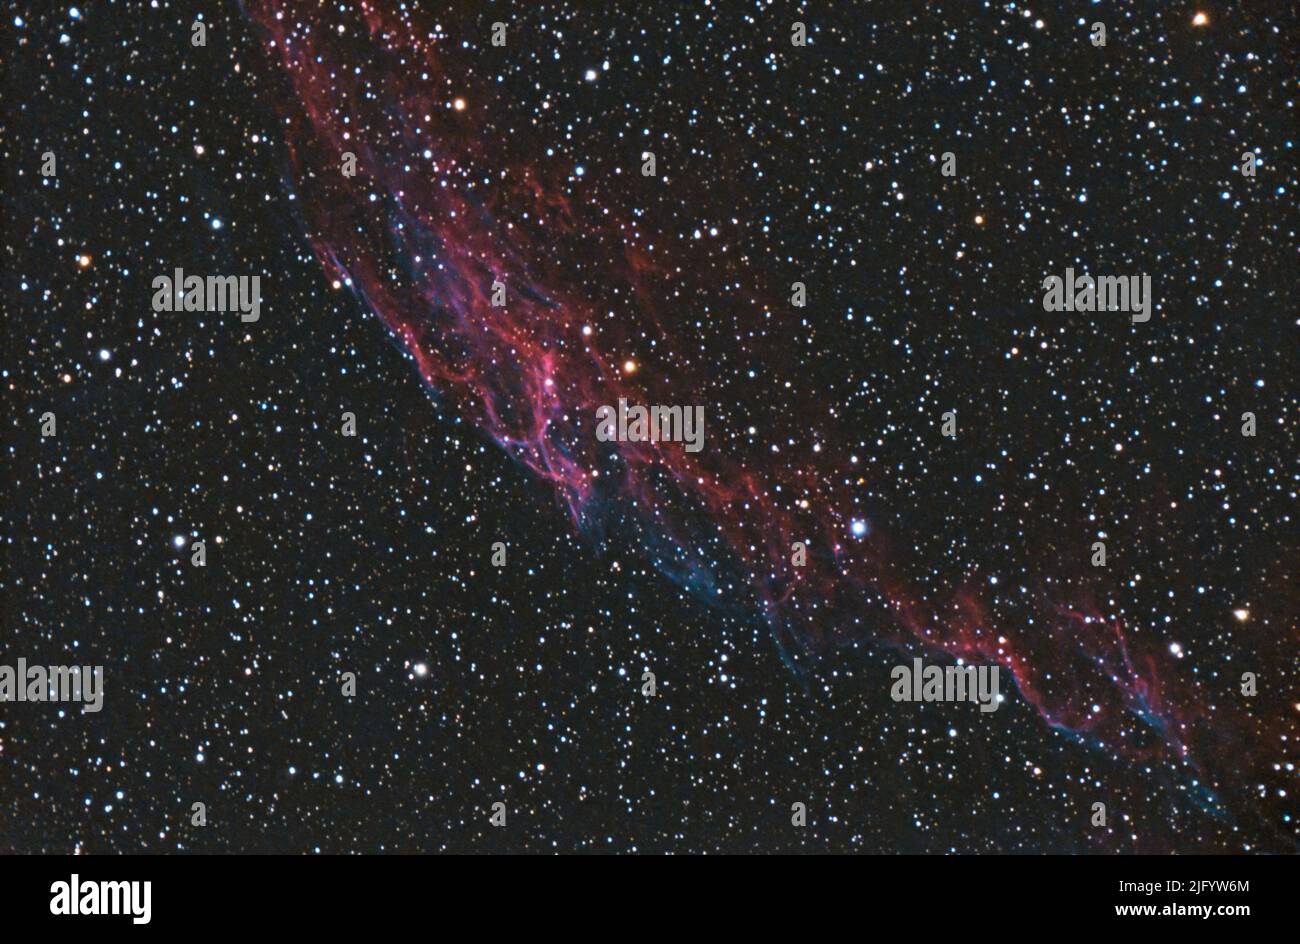 La nébuleuse de Veil, un vestige de supernova. Nuage de gaz et de poussière chauffés et ionisés dans la constellation de Cygnus. Banque D'Images